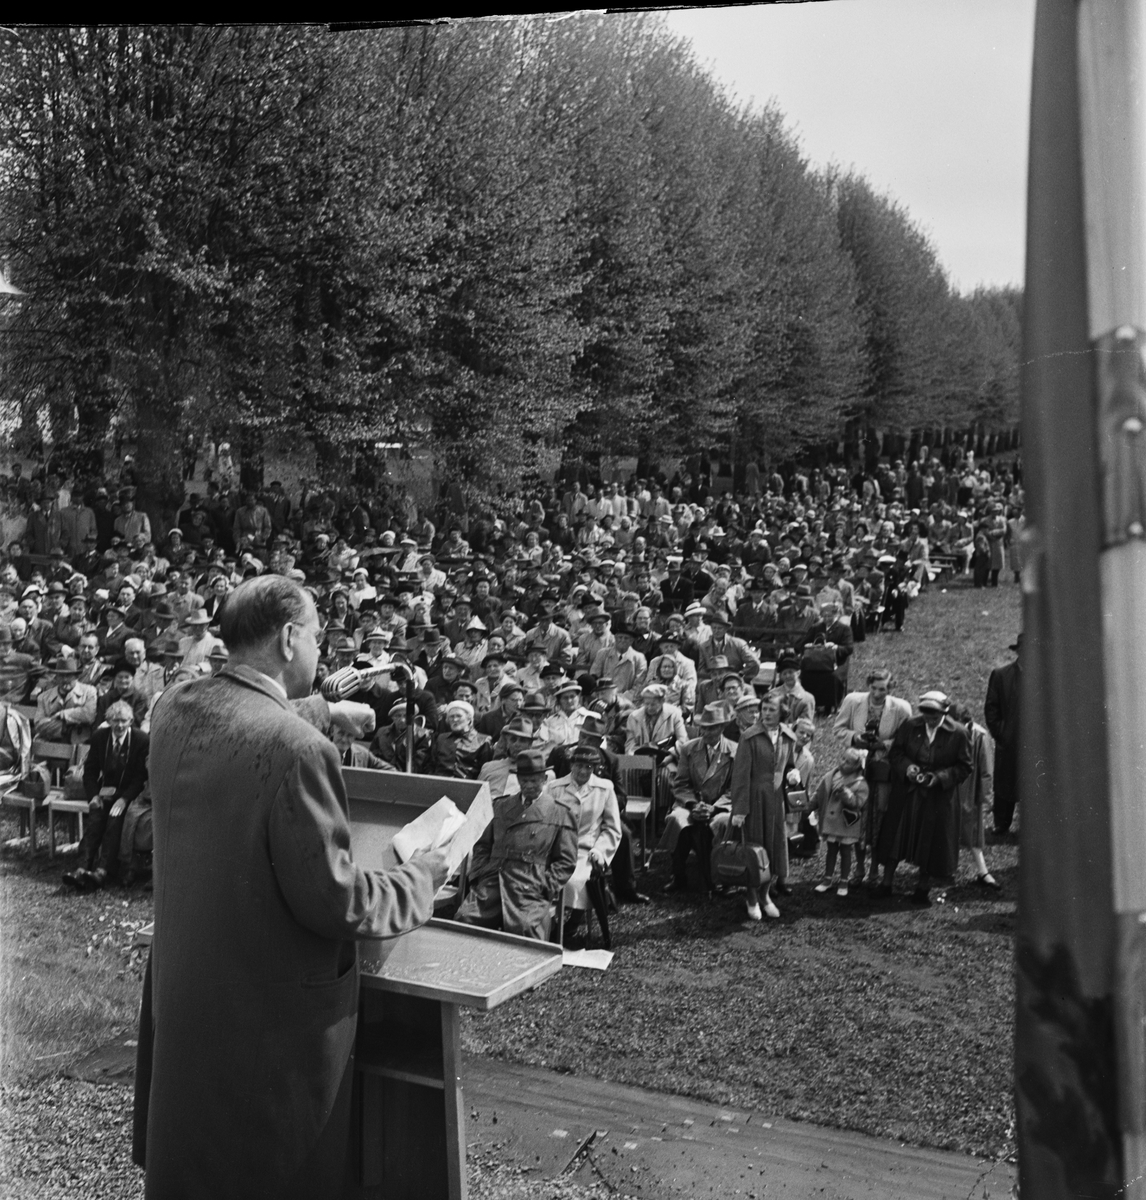 Österby Socialdemokratiska Arbetarkommuns jubileum, Österby, Uppland 1955